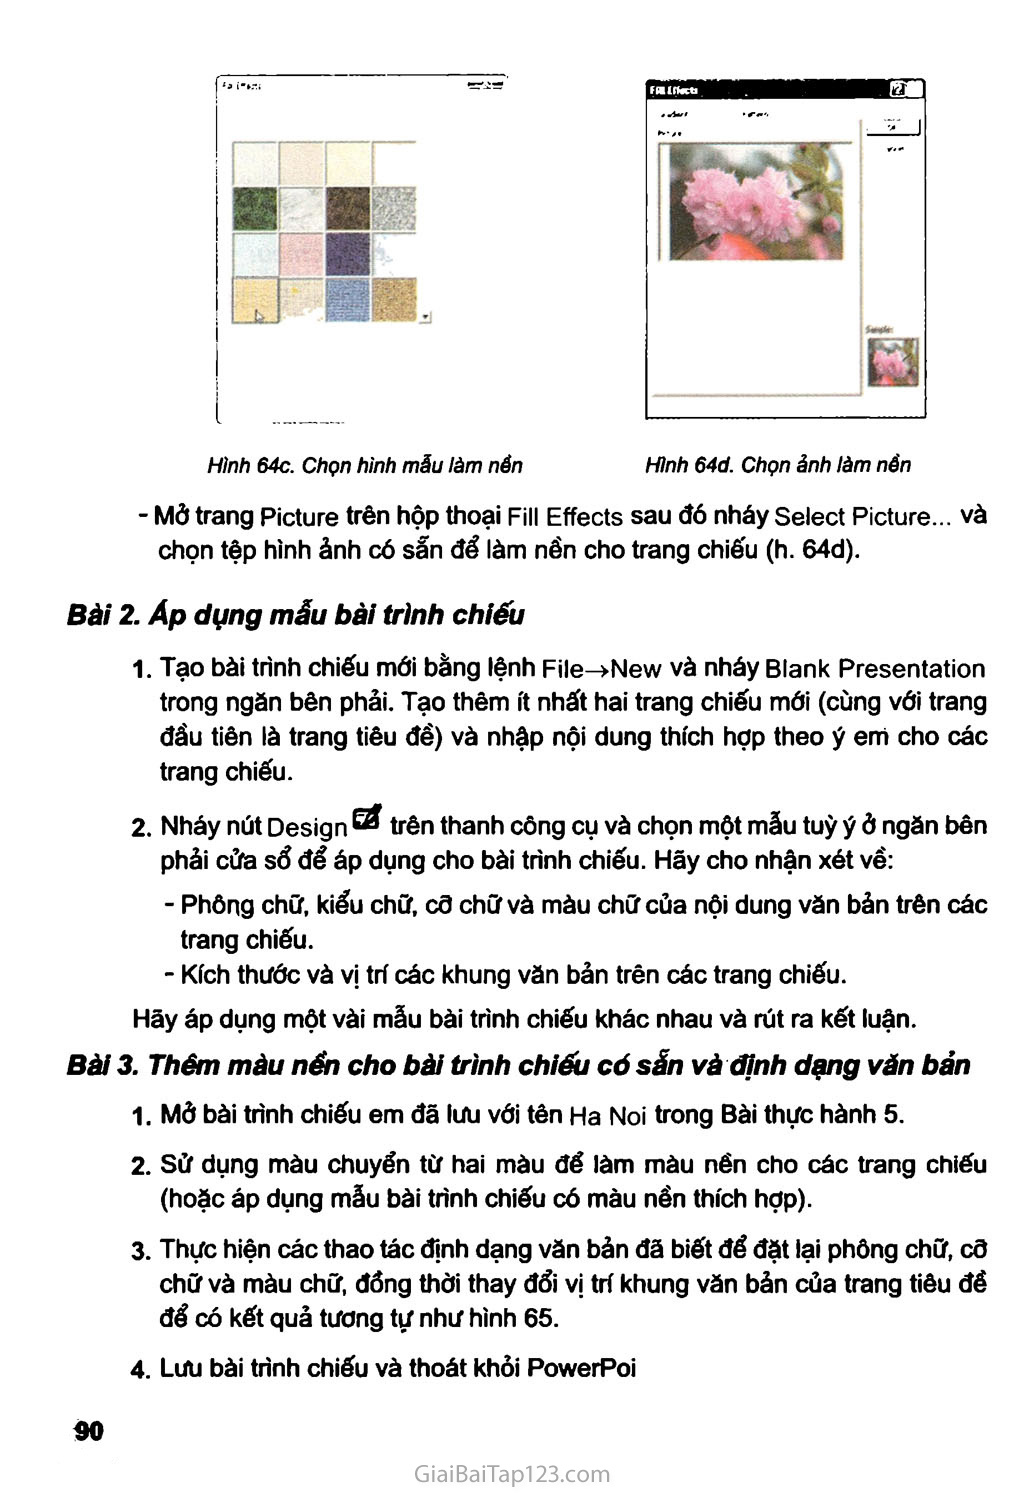 Bài thực hành 6. Thêm màu sắc cho bài trình chiếu trang 3